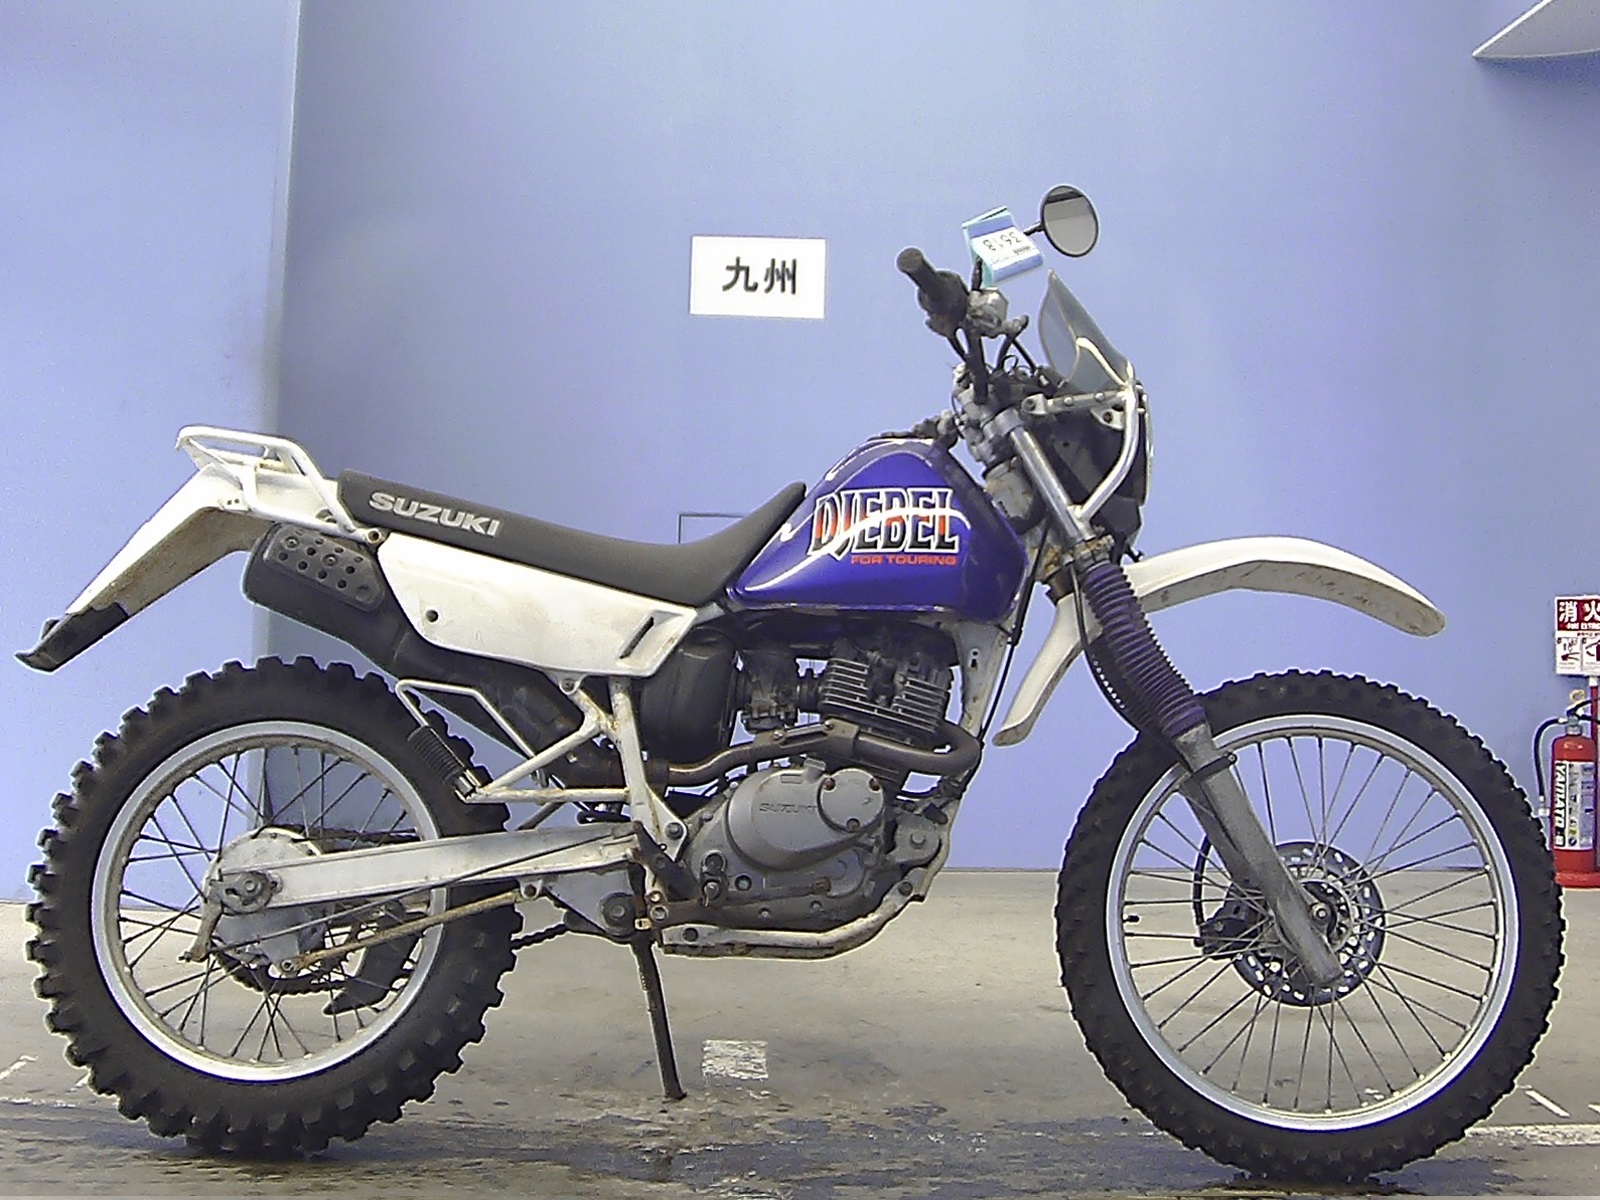 Suzuki Djebel 200